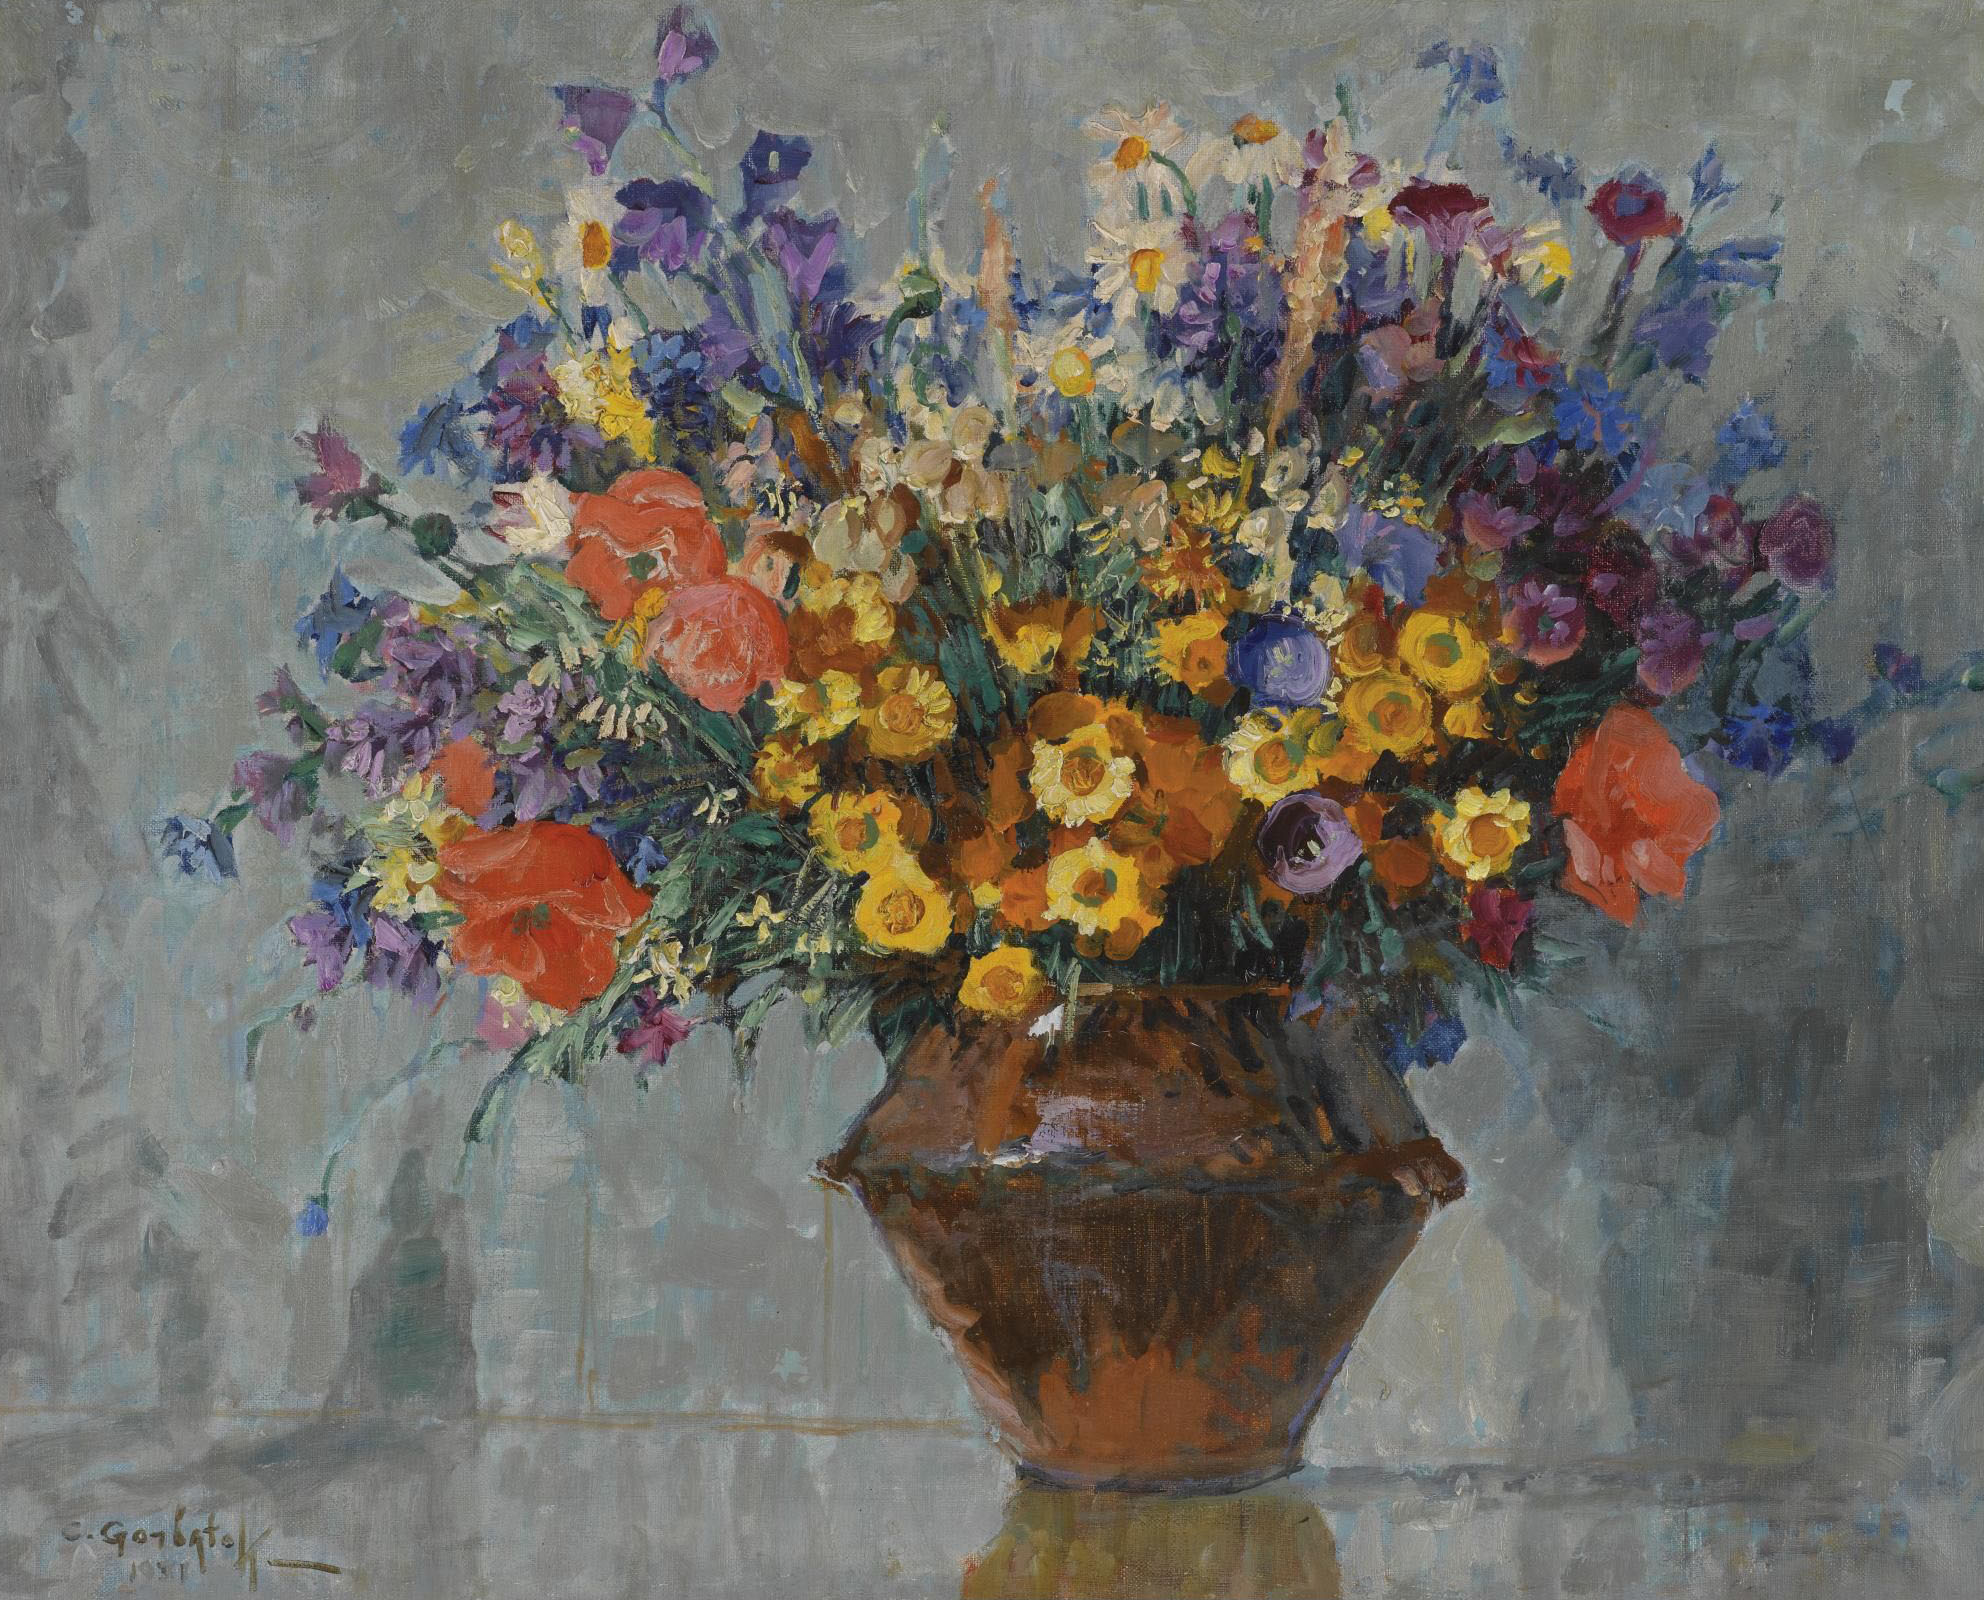 Горбатов. Букет цветов. 1931